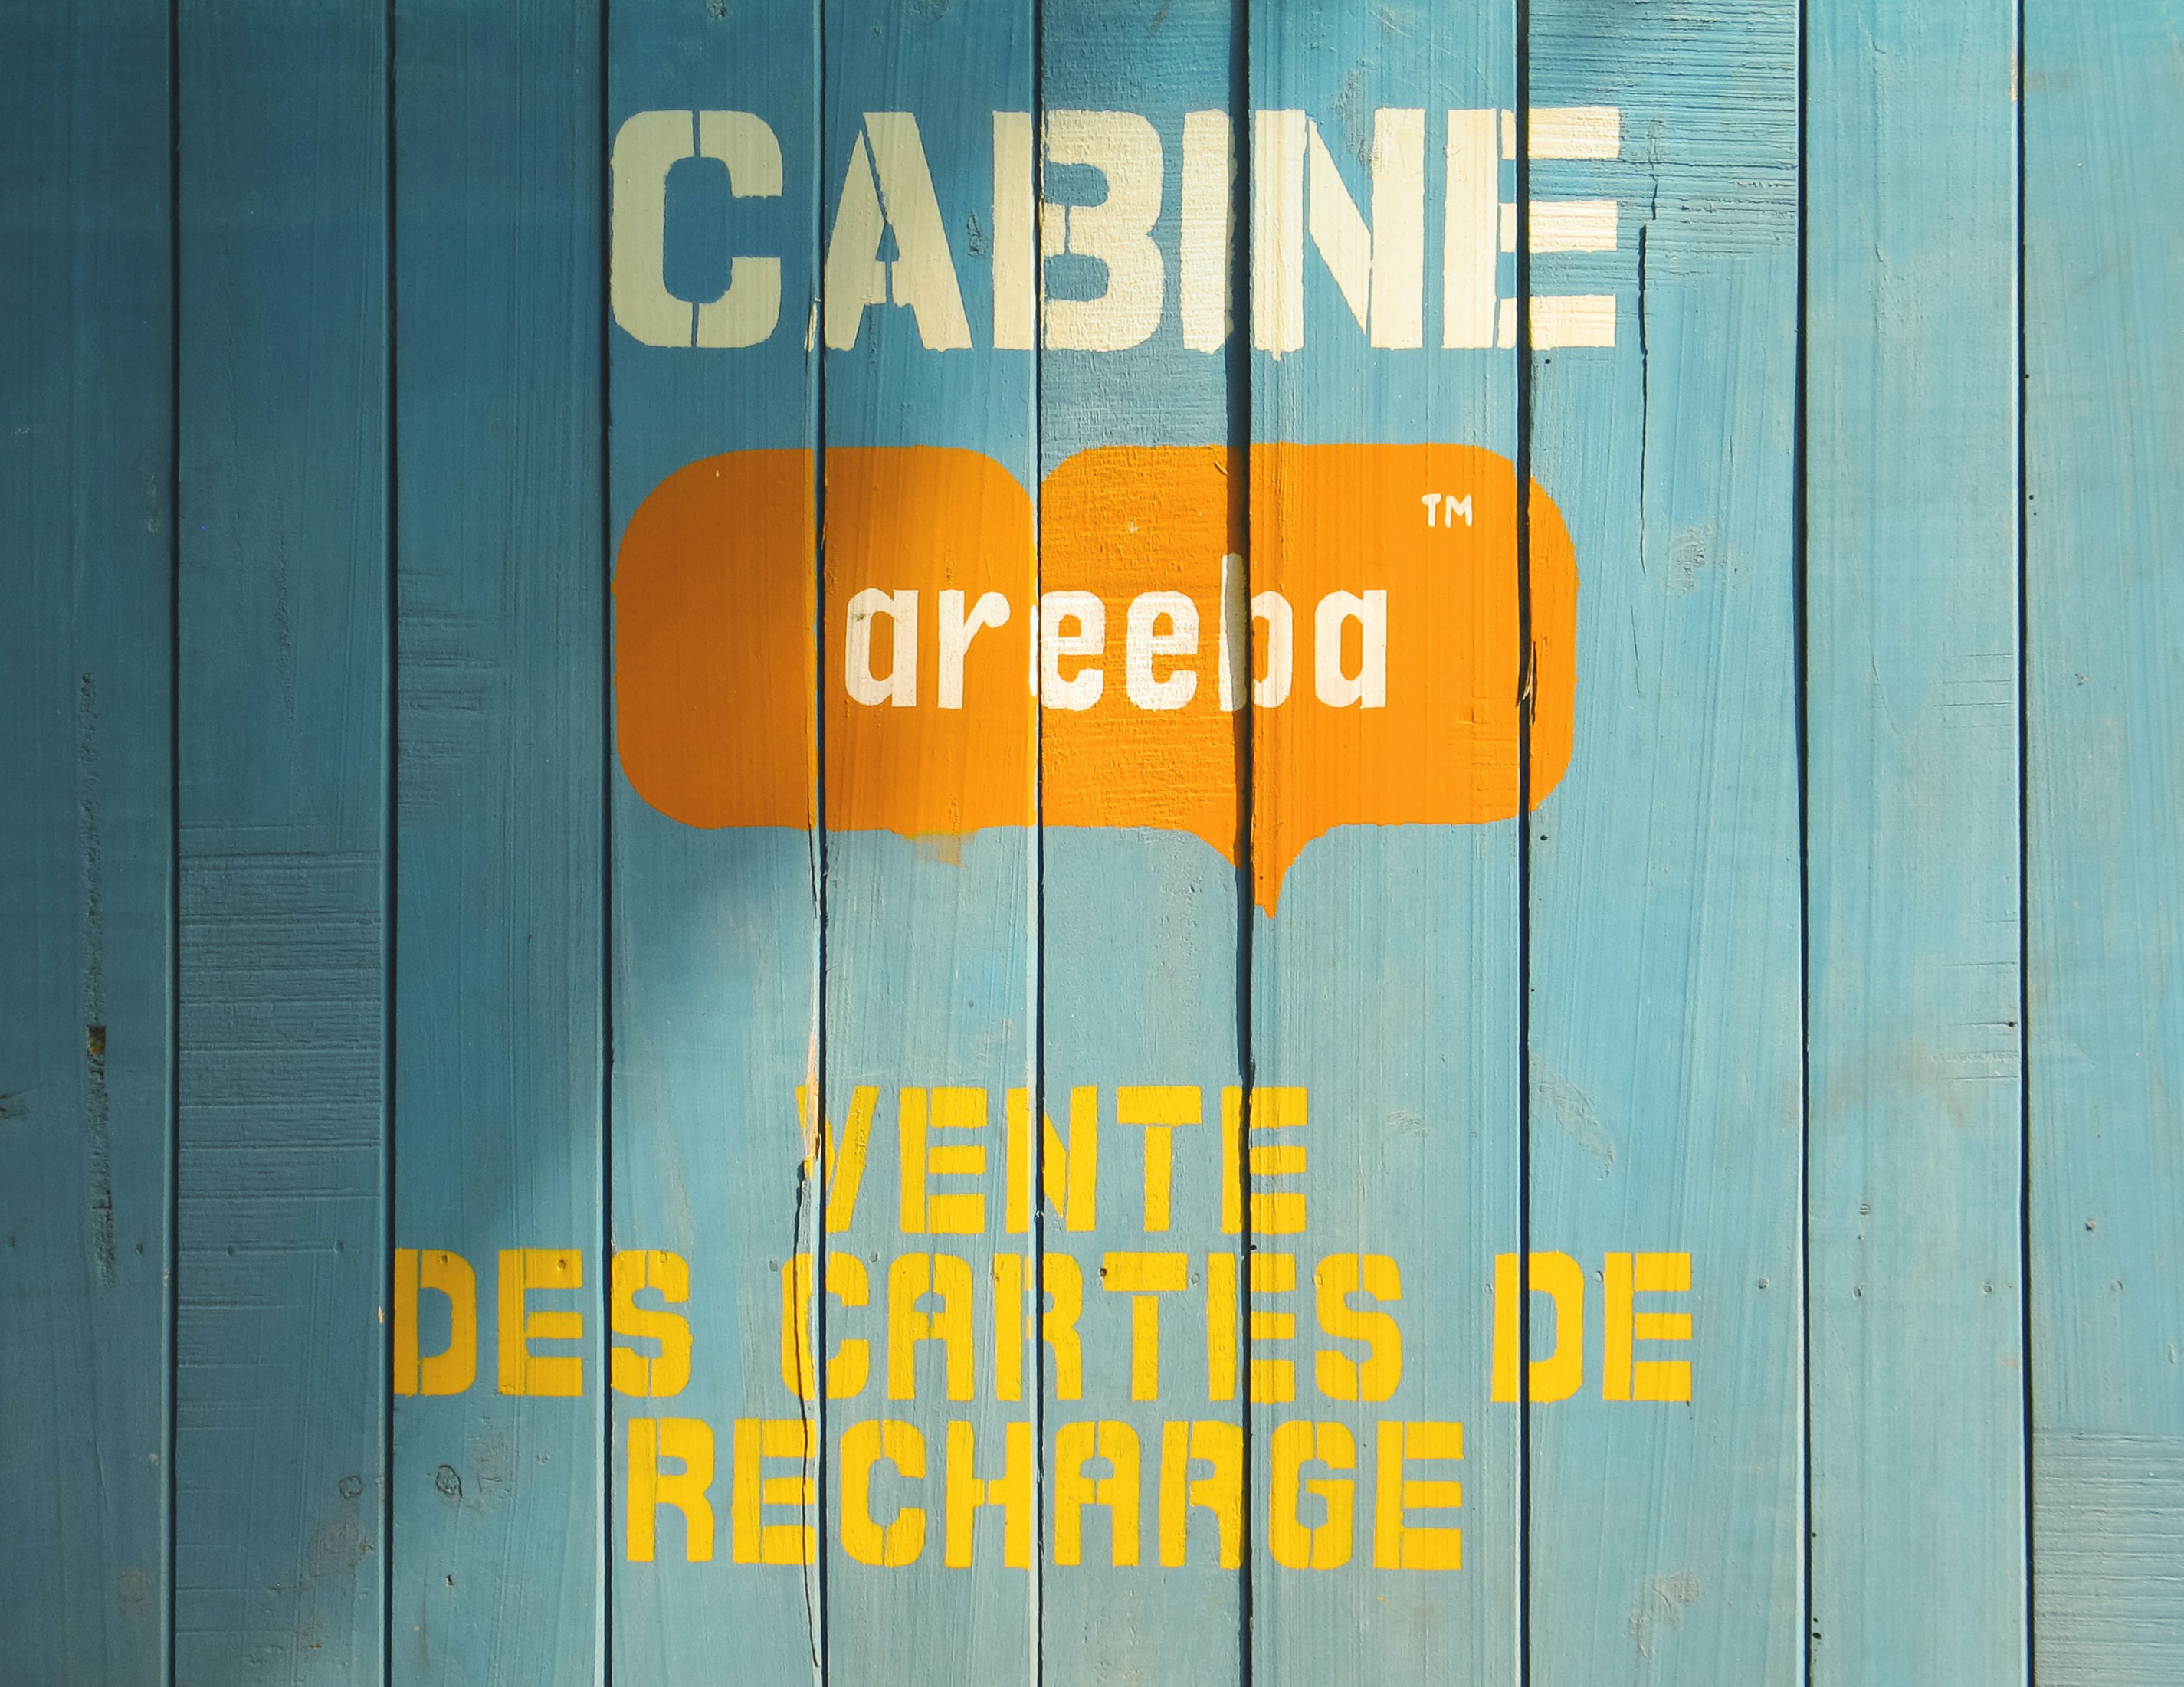 cabine areeba vente des cartes de recharge printed on wooden board